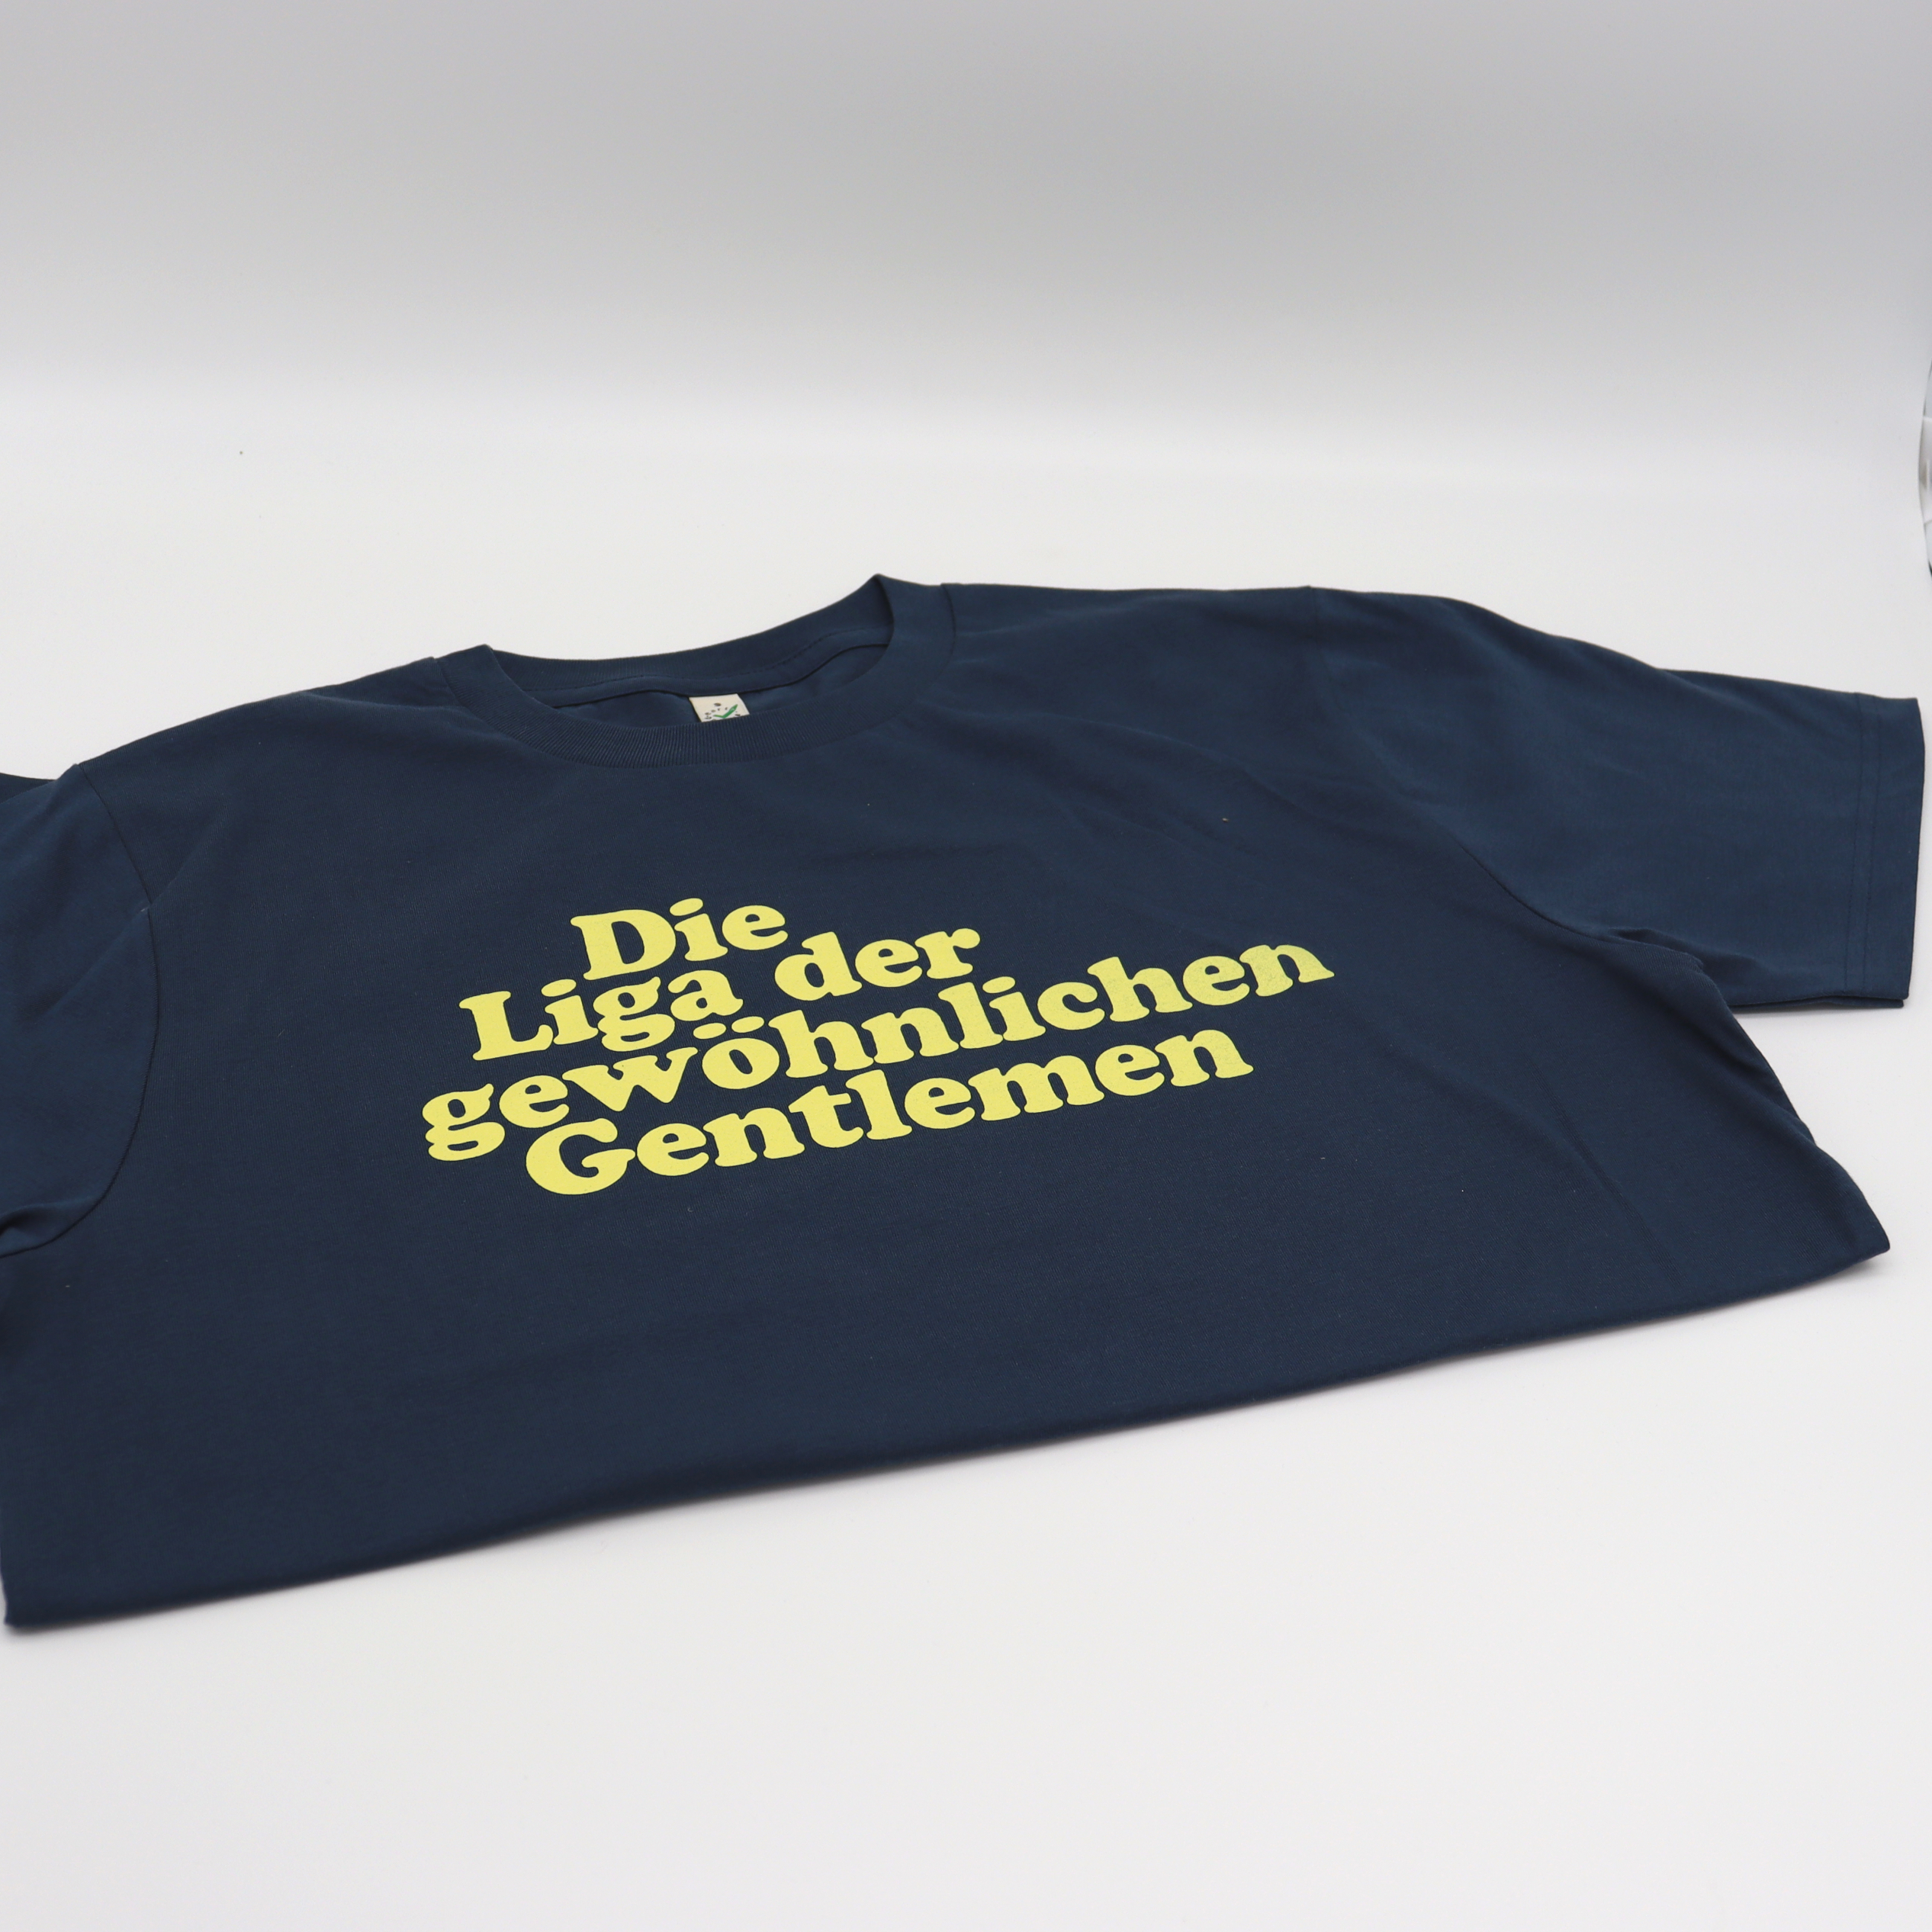 Die Liga der gewöhnlichen Gentlemen T-Shirt